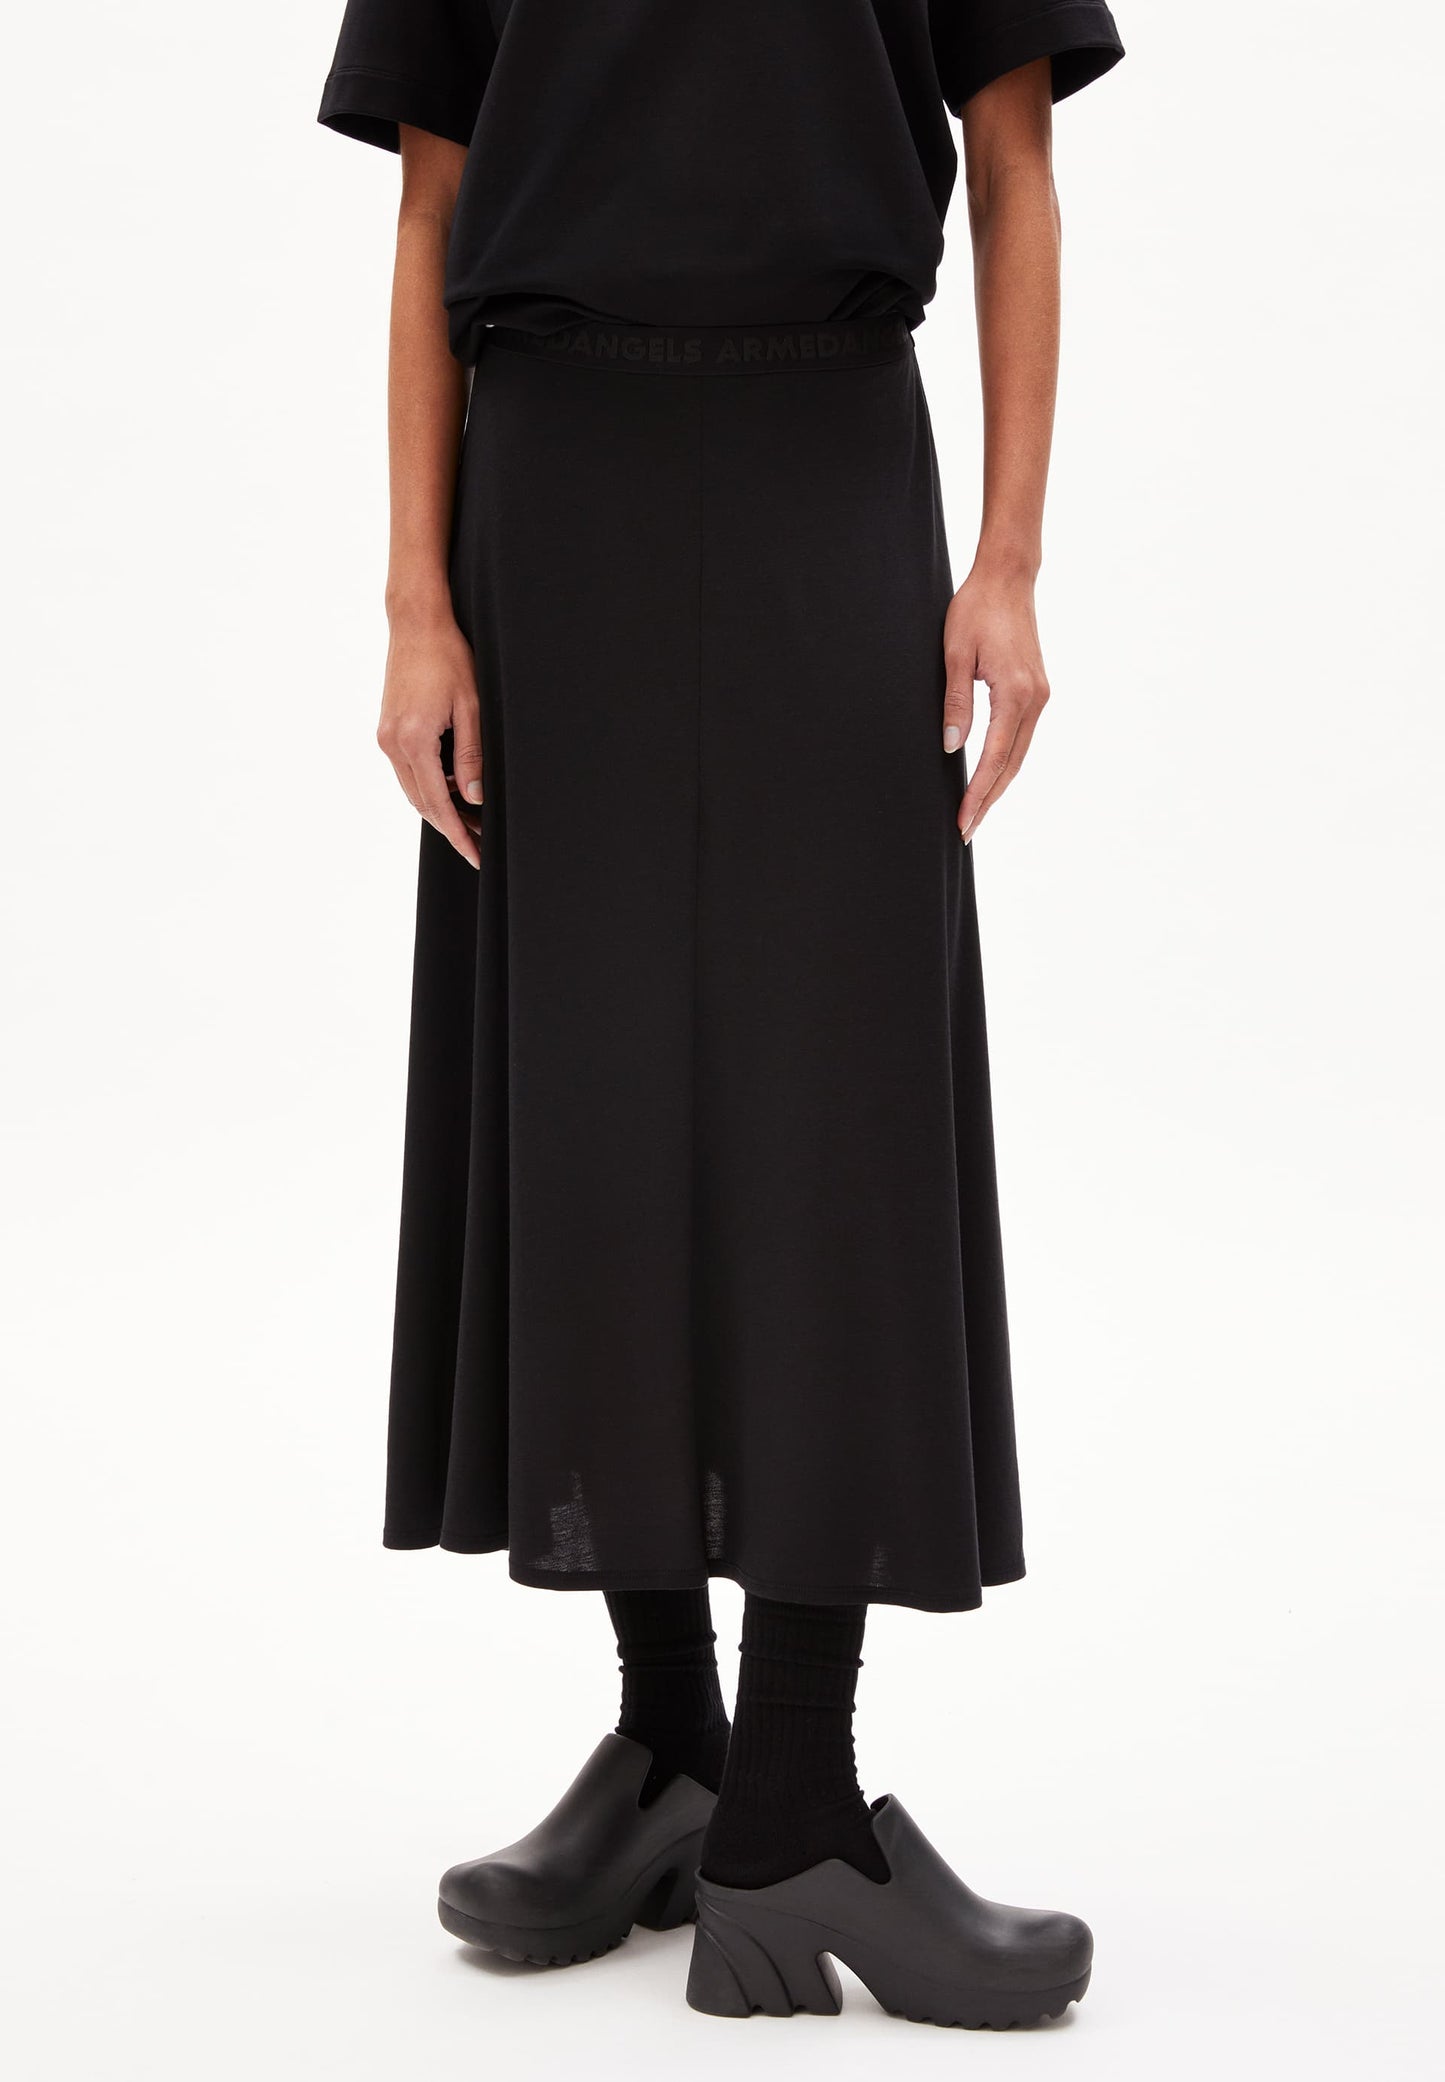 
                  
                    ILENIAA LARAA Black Jersey Skirt
                  
                